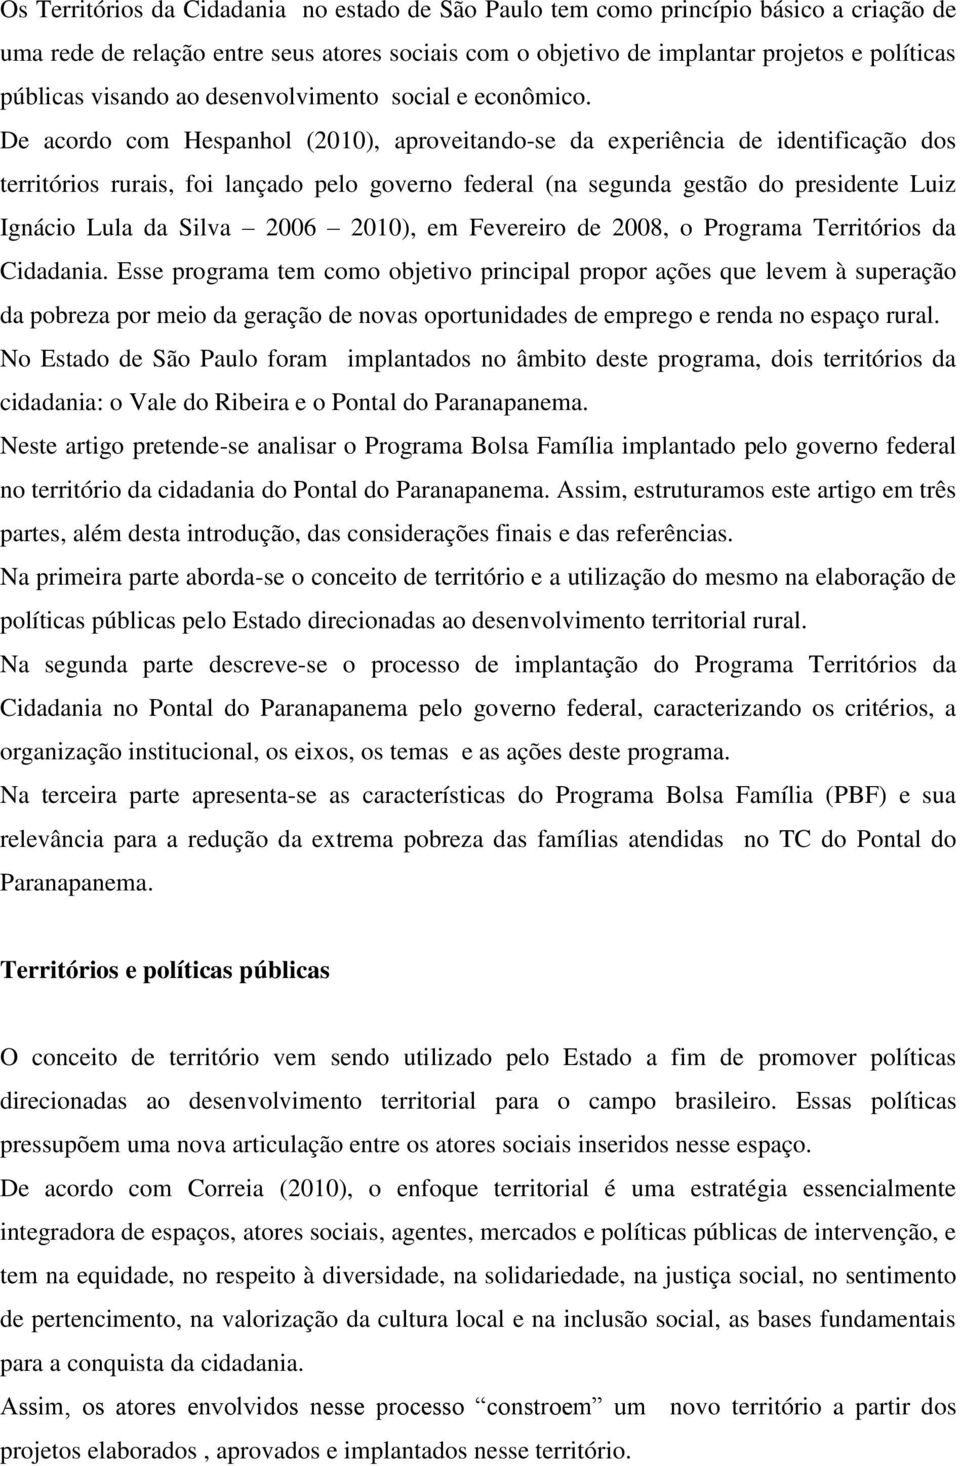 De acordo com Hespanhol (2010), aproveitando-se da experiência de identificação dos territórios rurais, foi lançado pelo governo federal (na segunda gestão do presidente Luiz Ignácio Lula da Silva